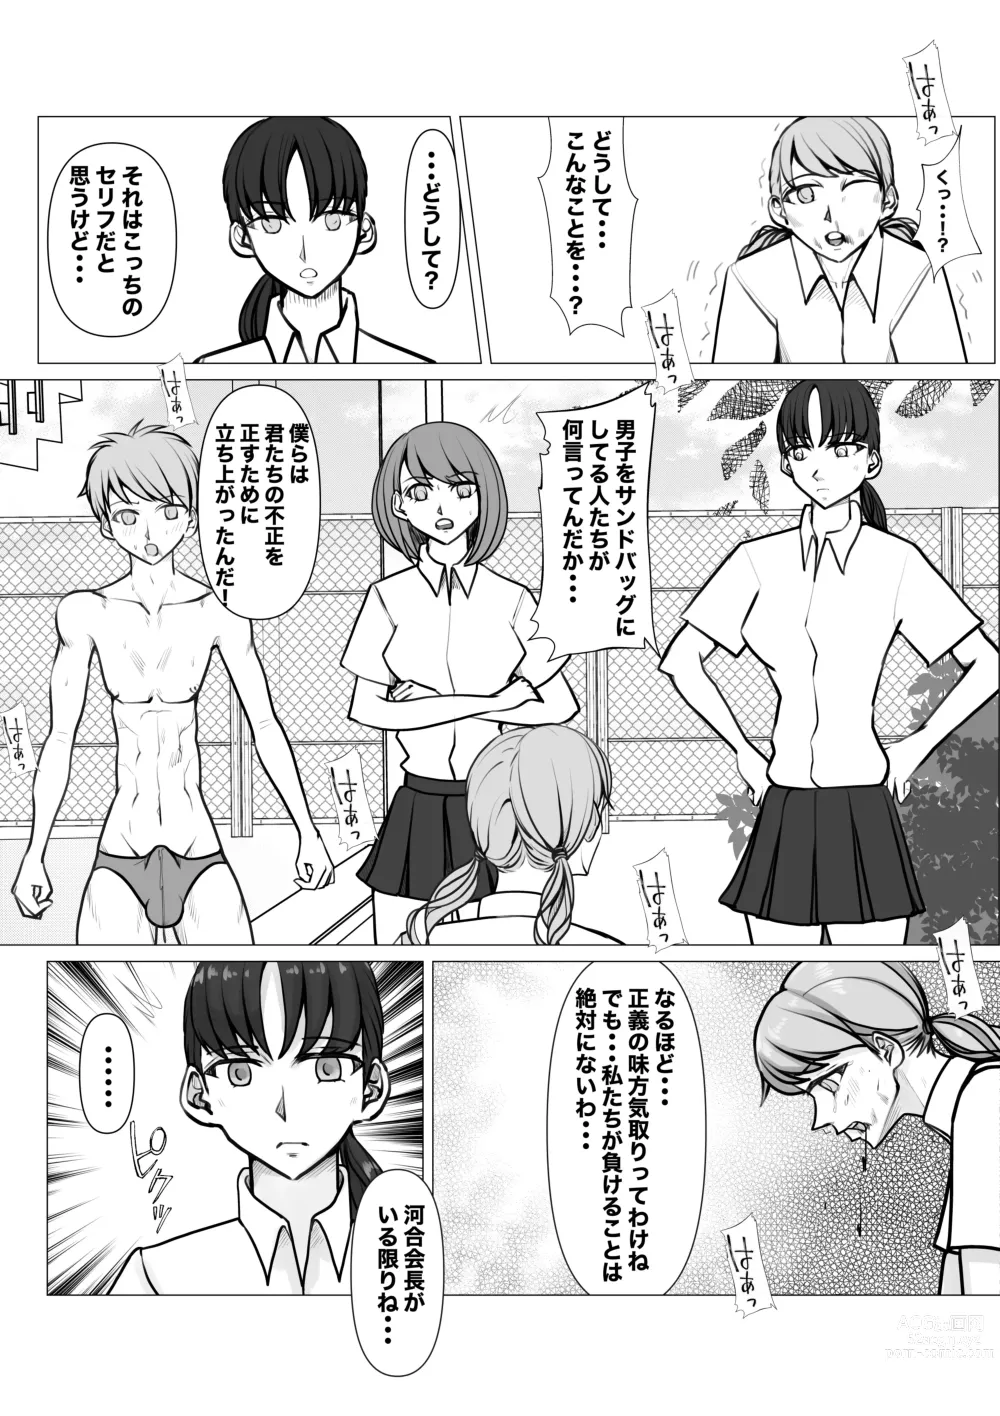 Page 30 of doujinshi Shin Joshi Seito-kai to no Tatakai 2